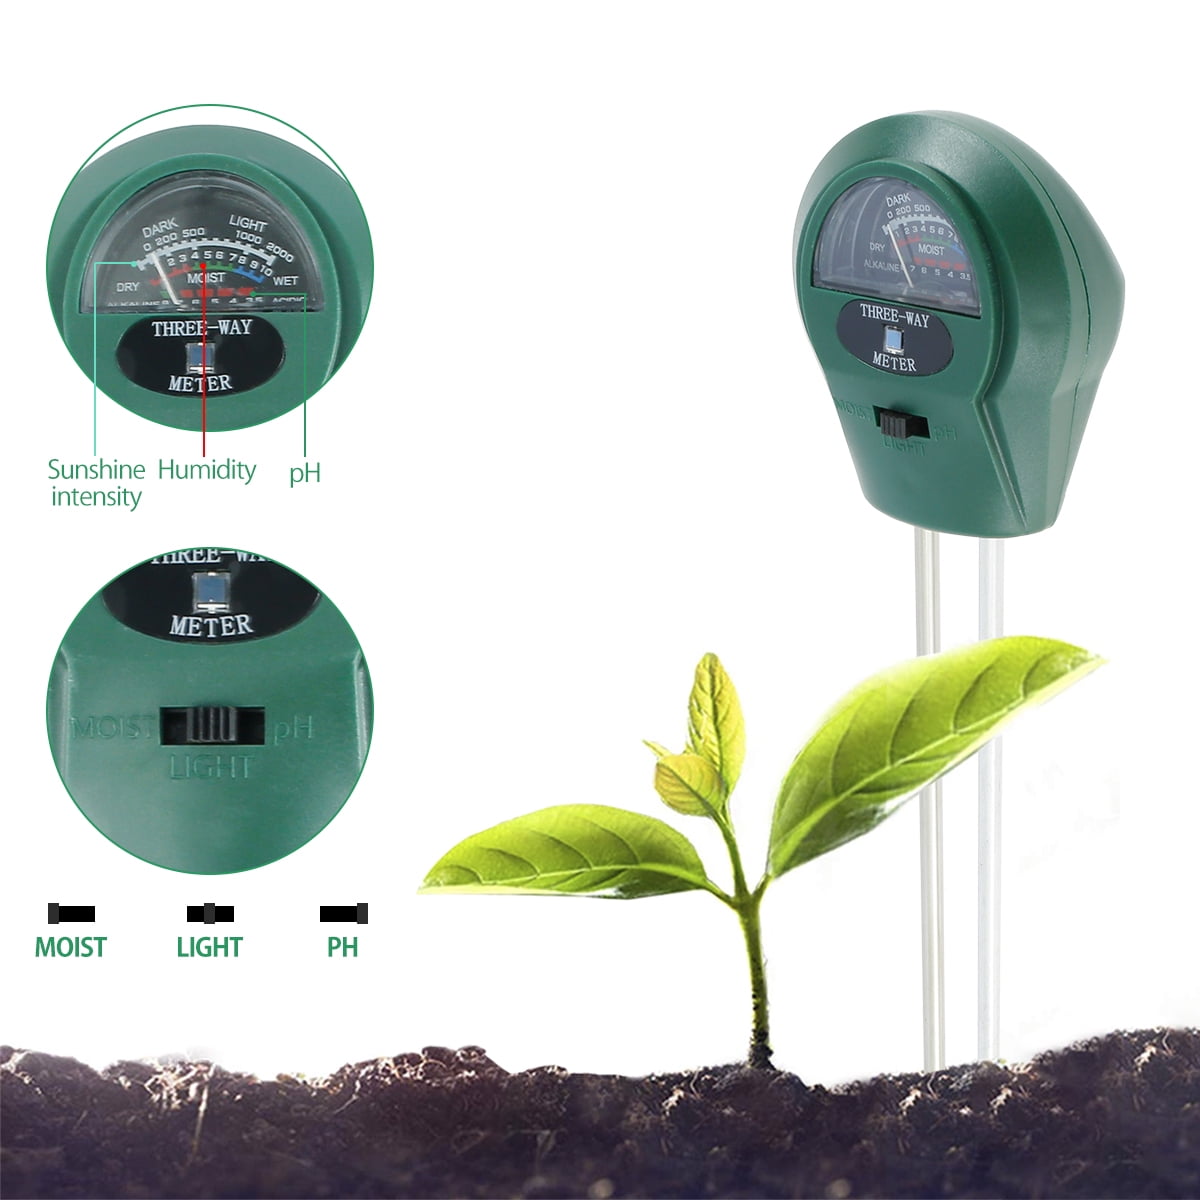 Aohao Soil Moisture Meter Plant Care Soil Tester Portable Plants Moisture Meter Plant Water Monitor Green Soil Hydrometer Sensor Gardening Tool Kit